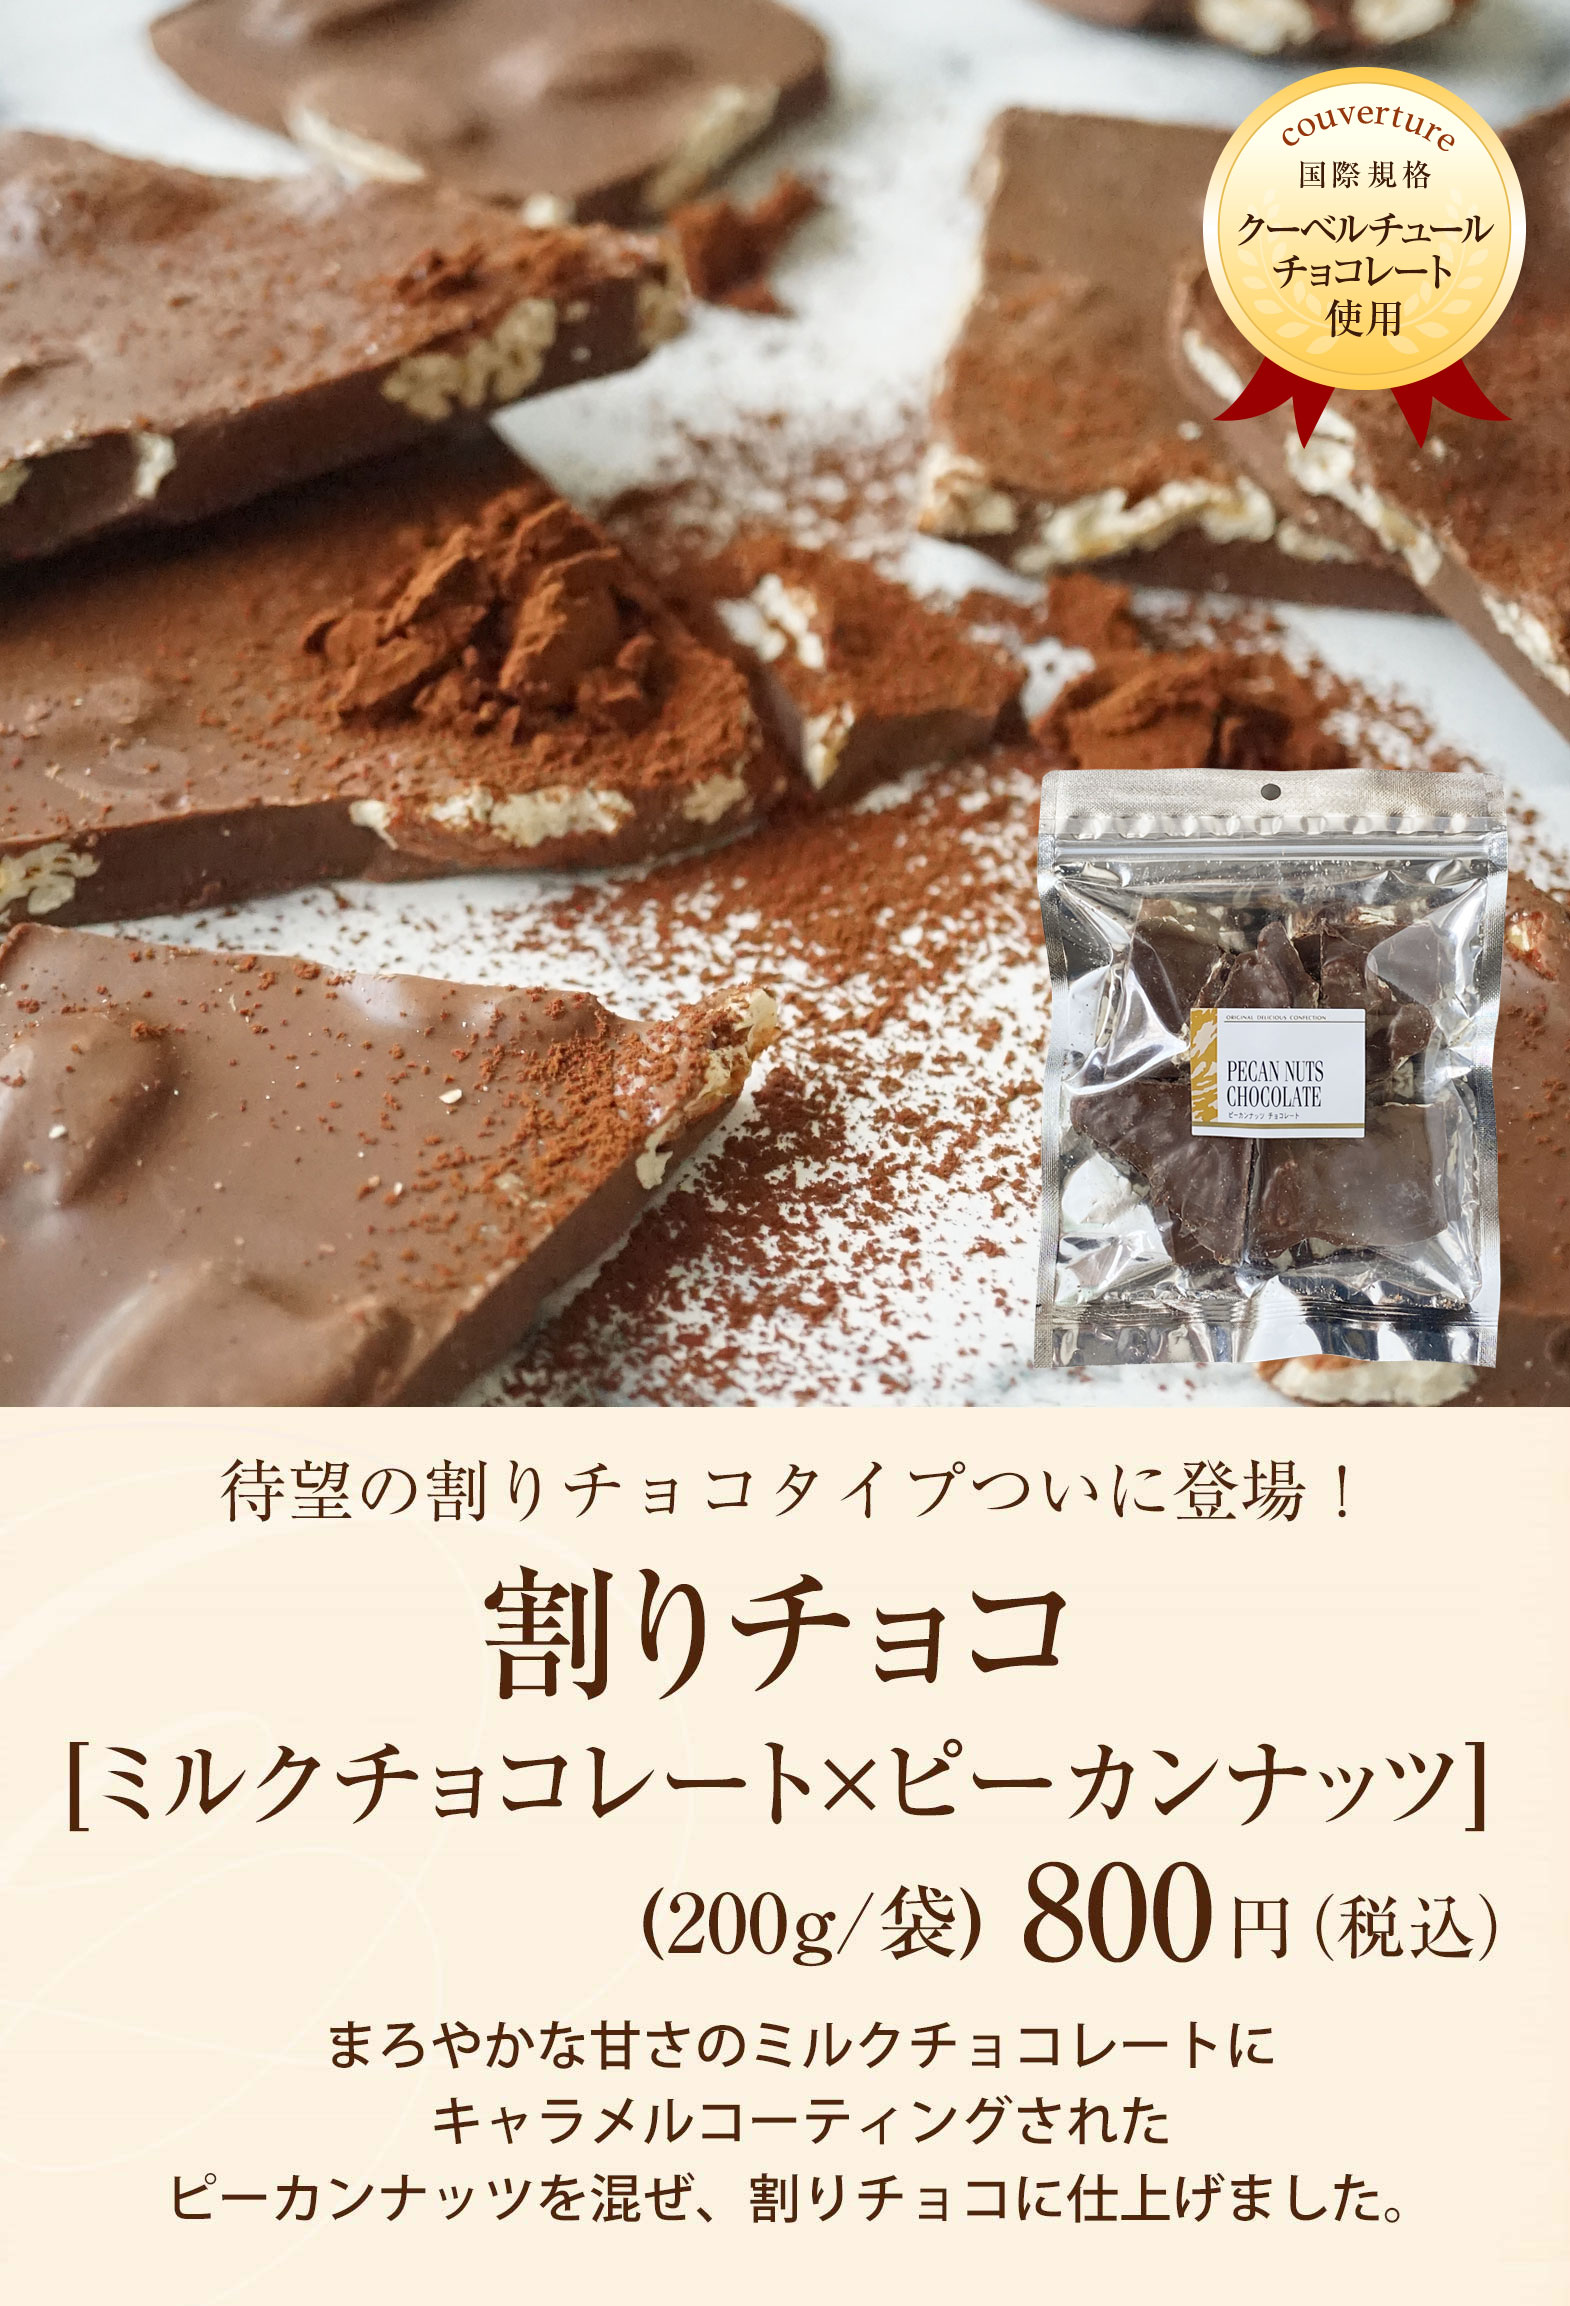 割りチョコ ミルクチョコレート ピーカンナッツ 0ｇ 袋 のプレゼントはギフト通販のサロンドロワイヤル